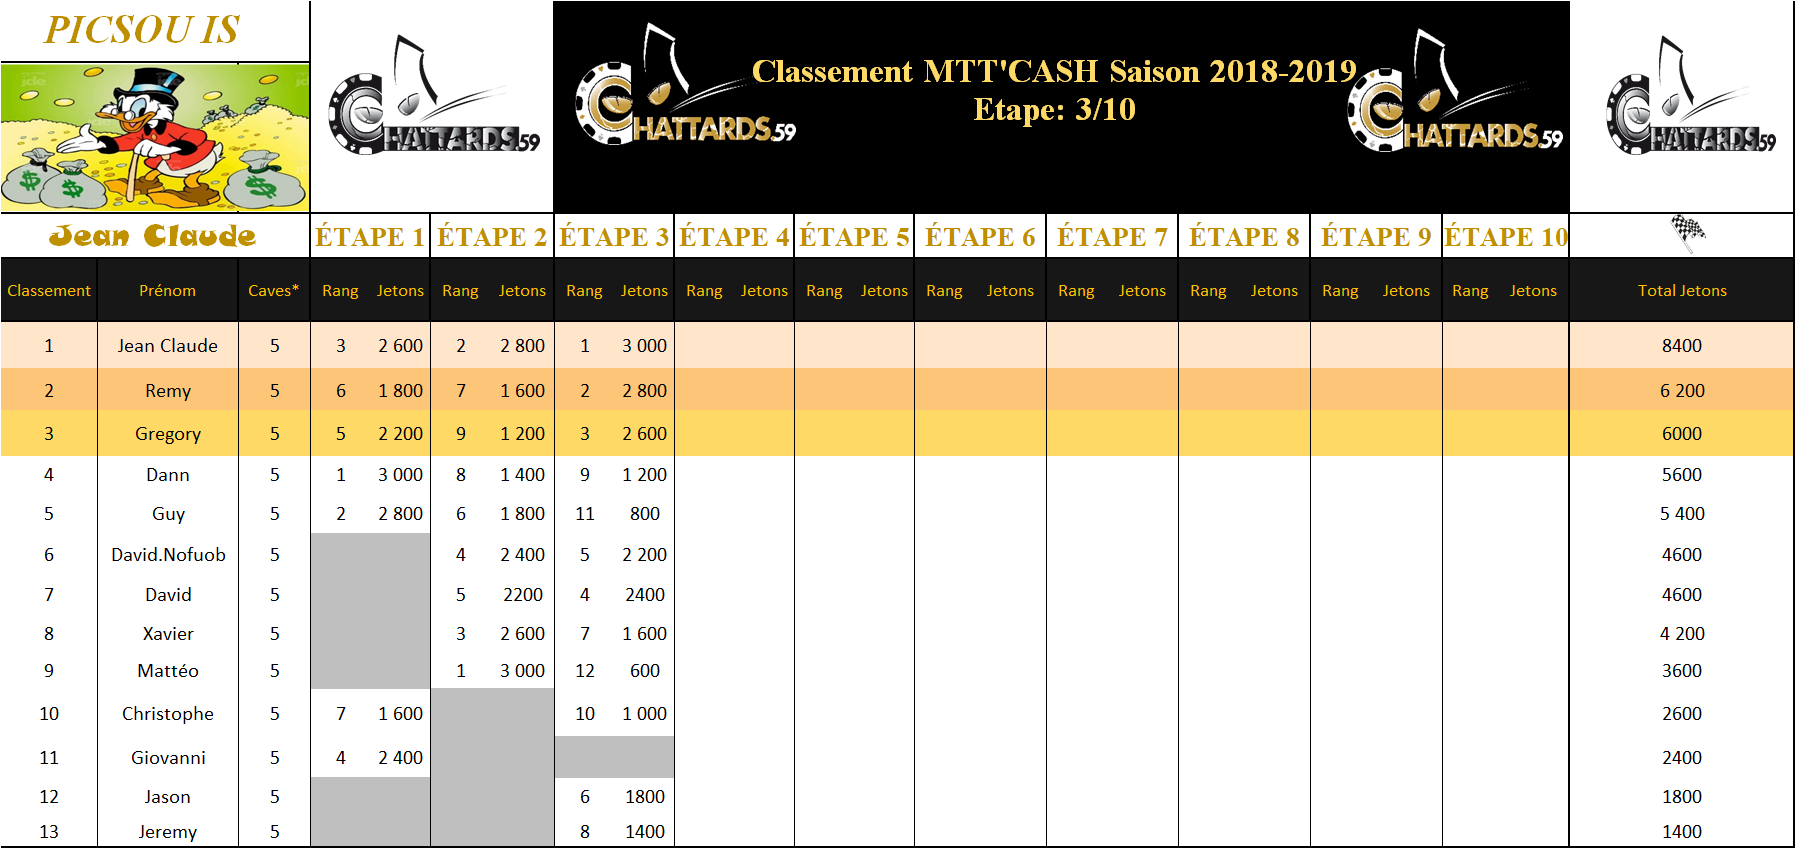 Classement MTT'CASH SAISON 2019-2020 Mhfa